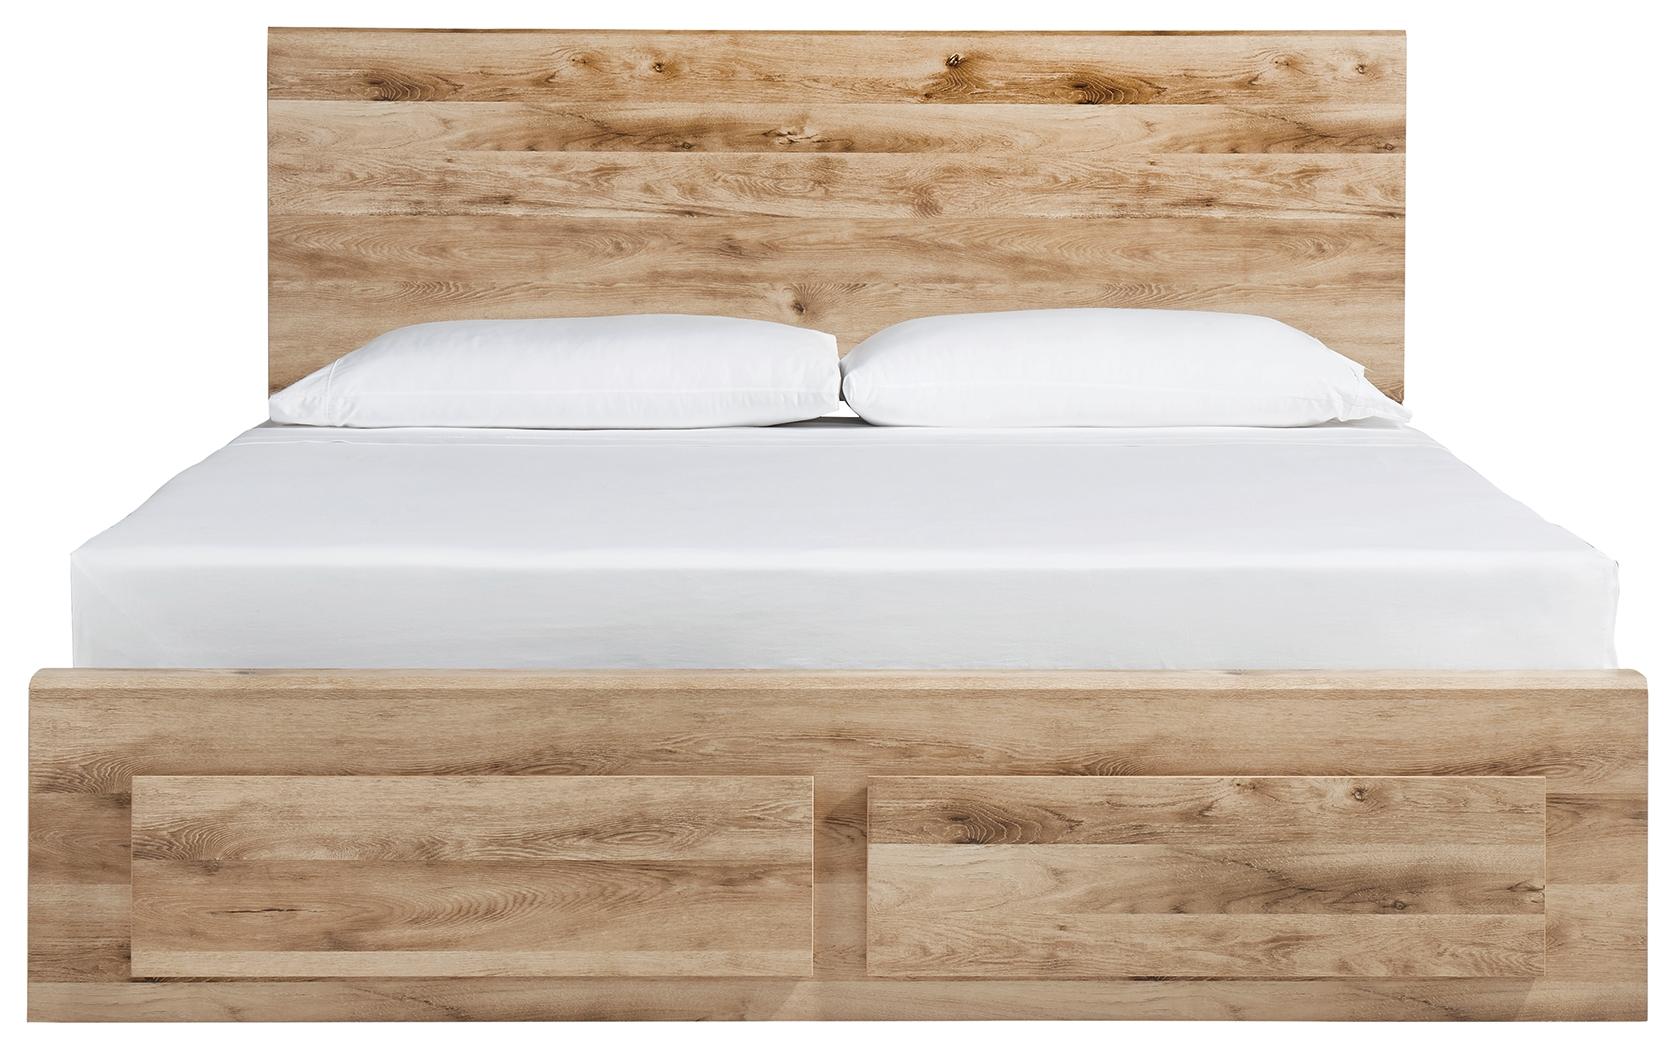 ASHLEY FURNITURE B1050B6 Hyanna Queen Panel Storage Bed With 1 Under Bed Storage Drawer